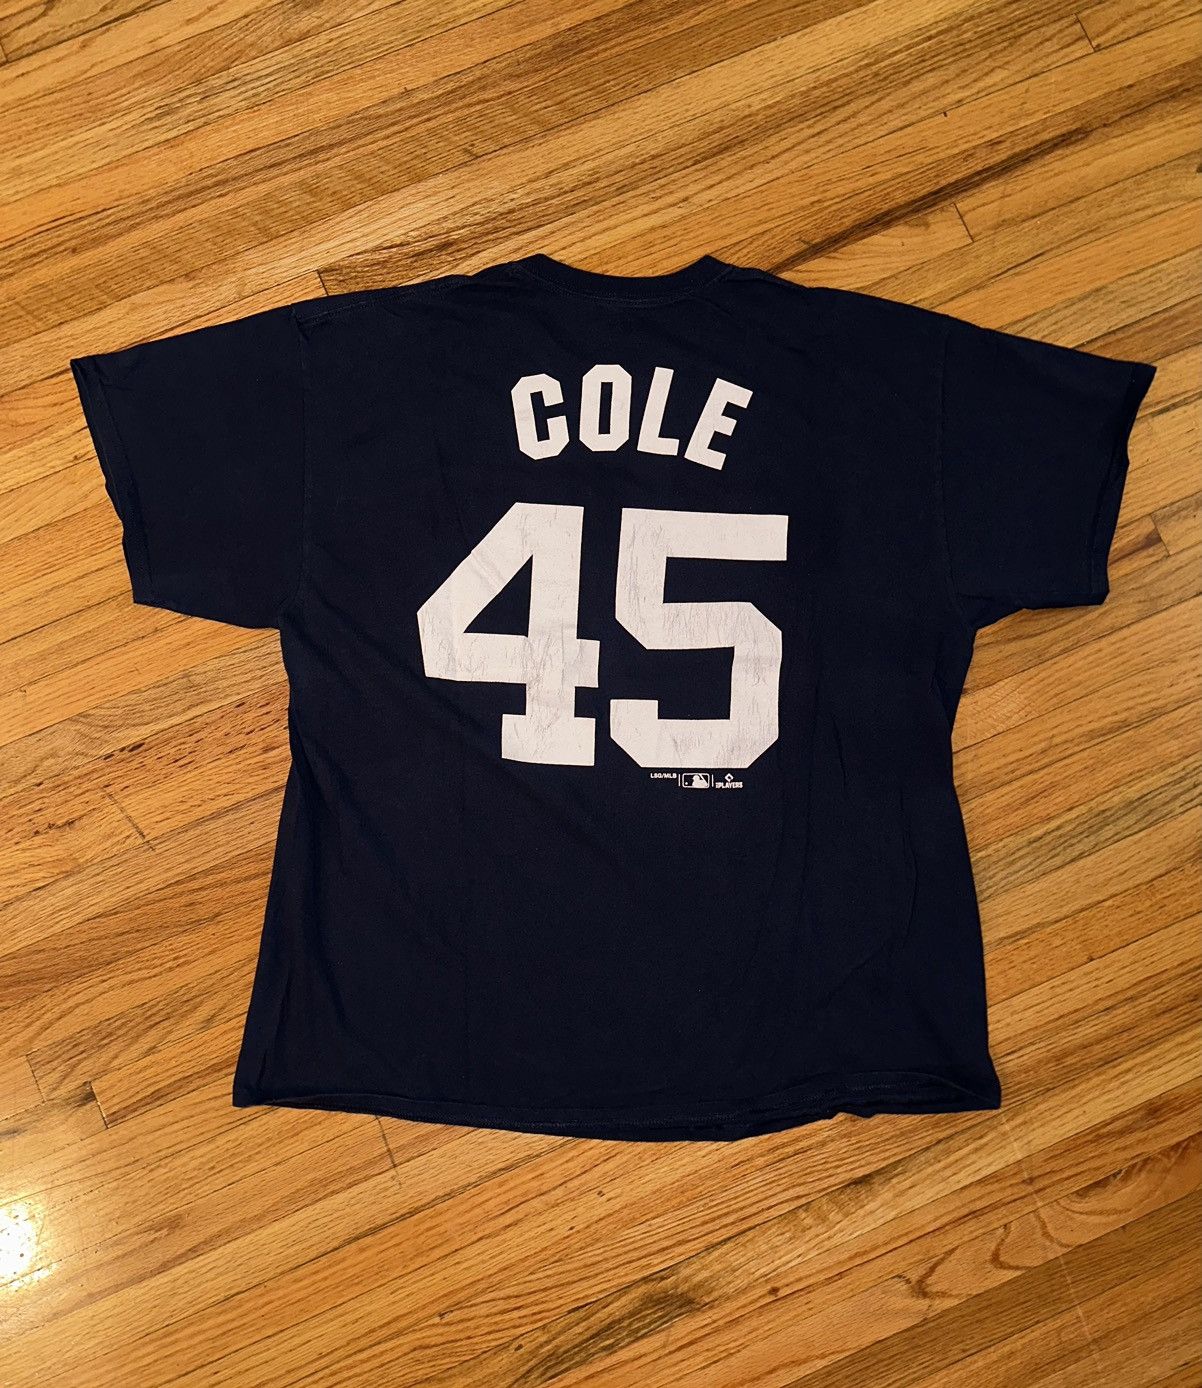 Majestic, Shirts, New York Yankees Baseball Cole 45 Jersey